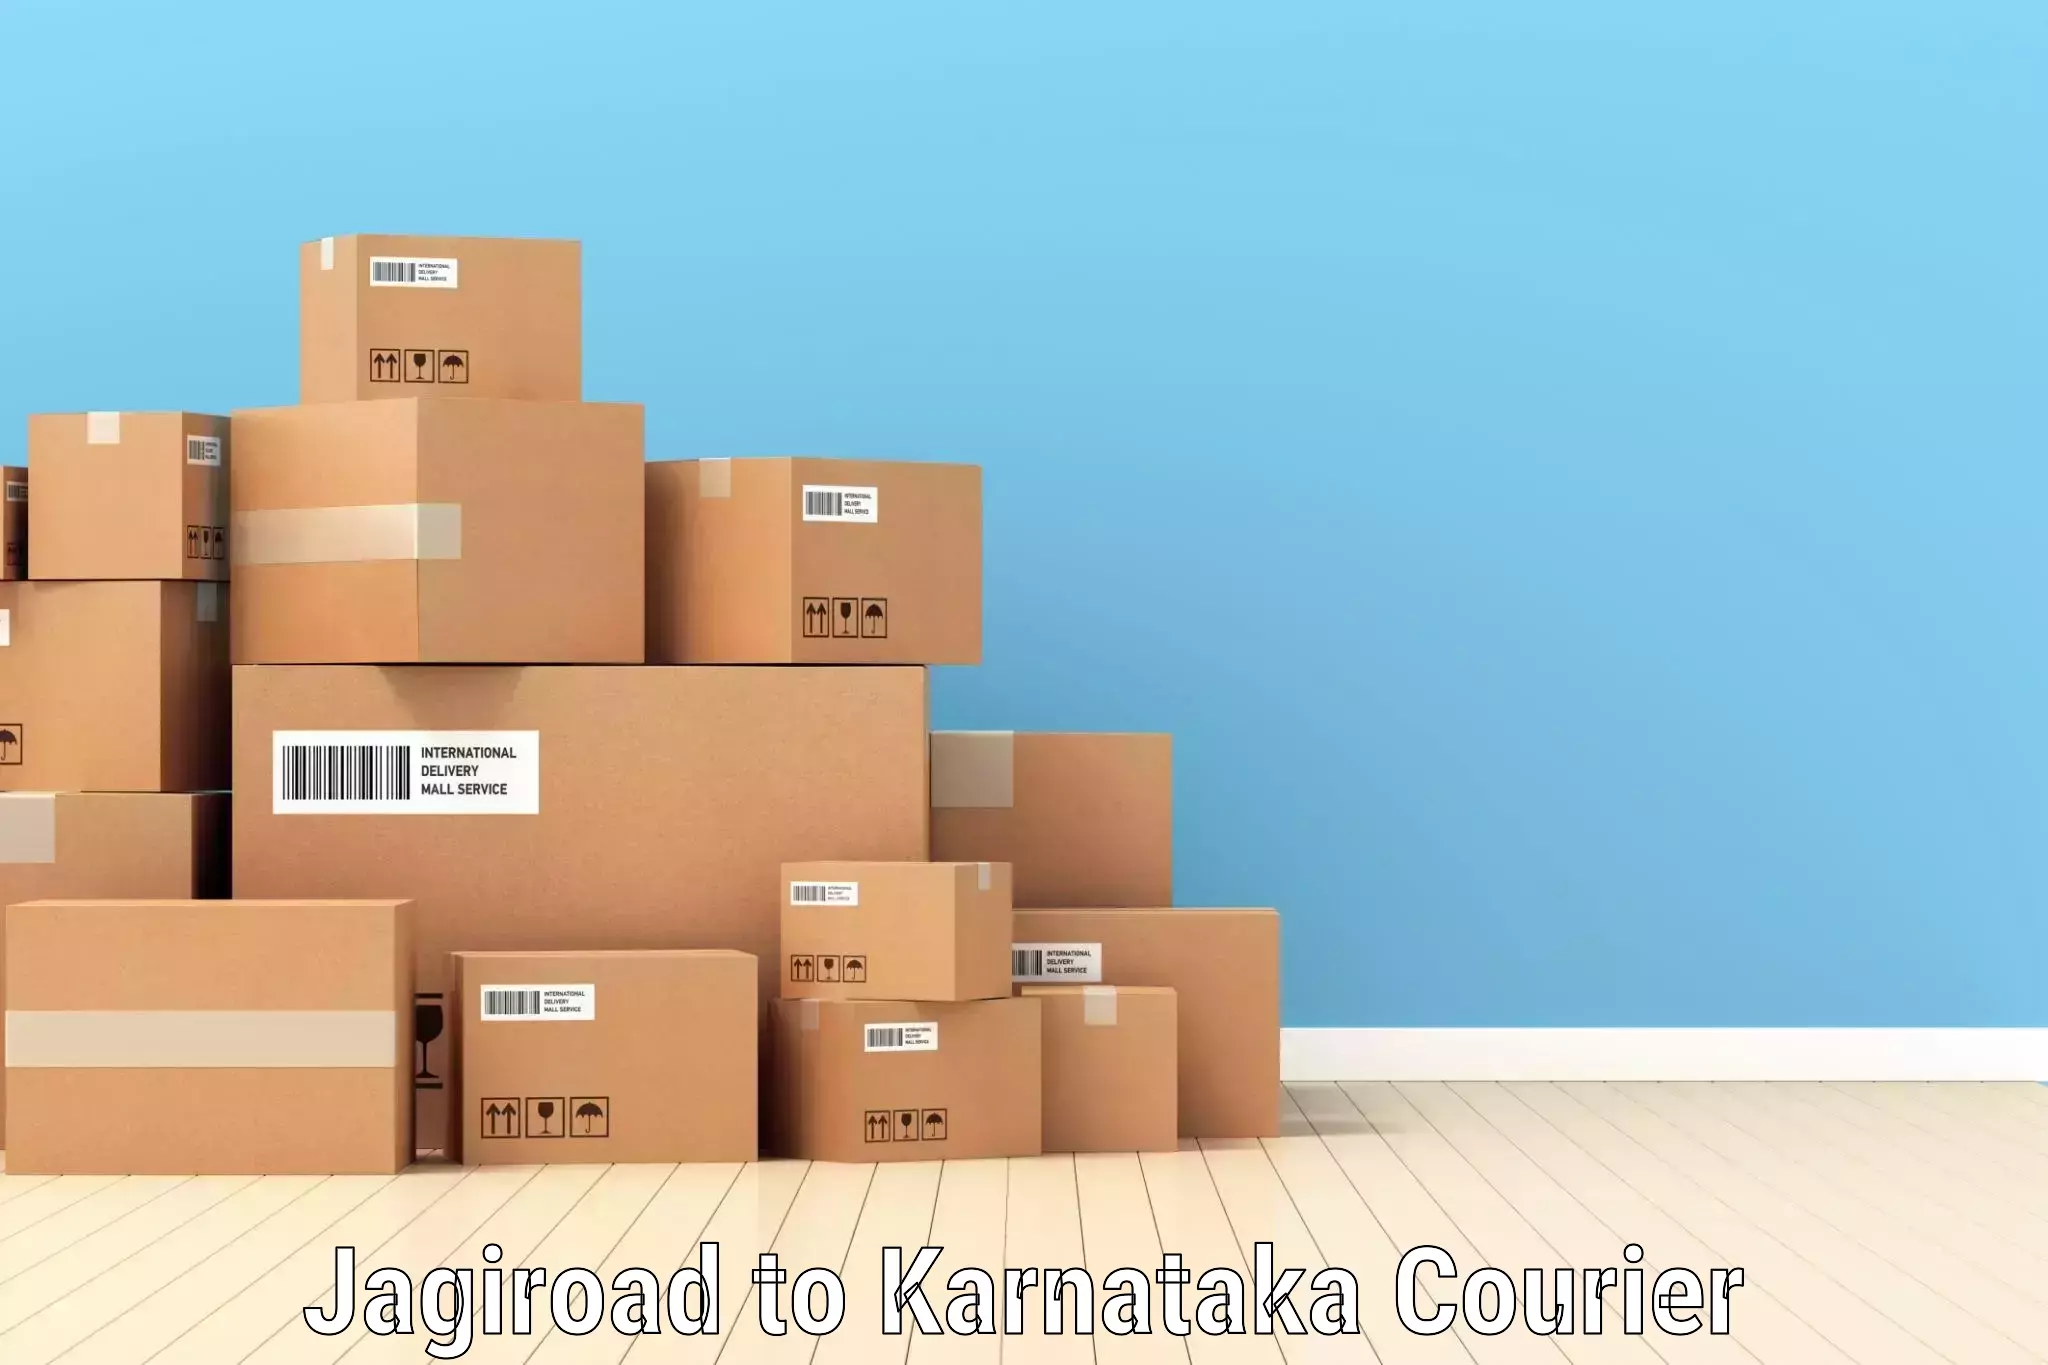 Express mail solutions Jagiroad to Karnataka